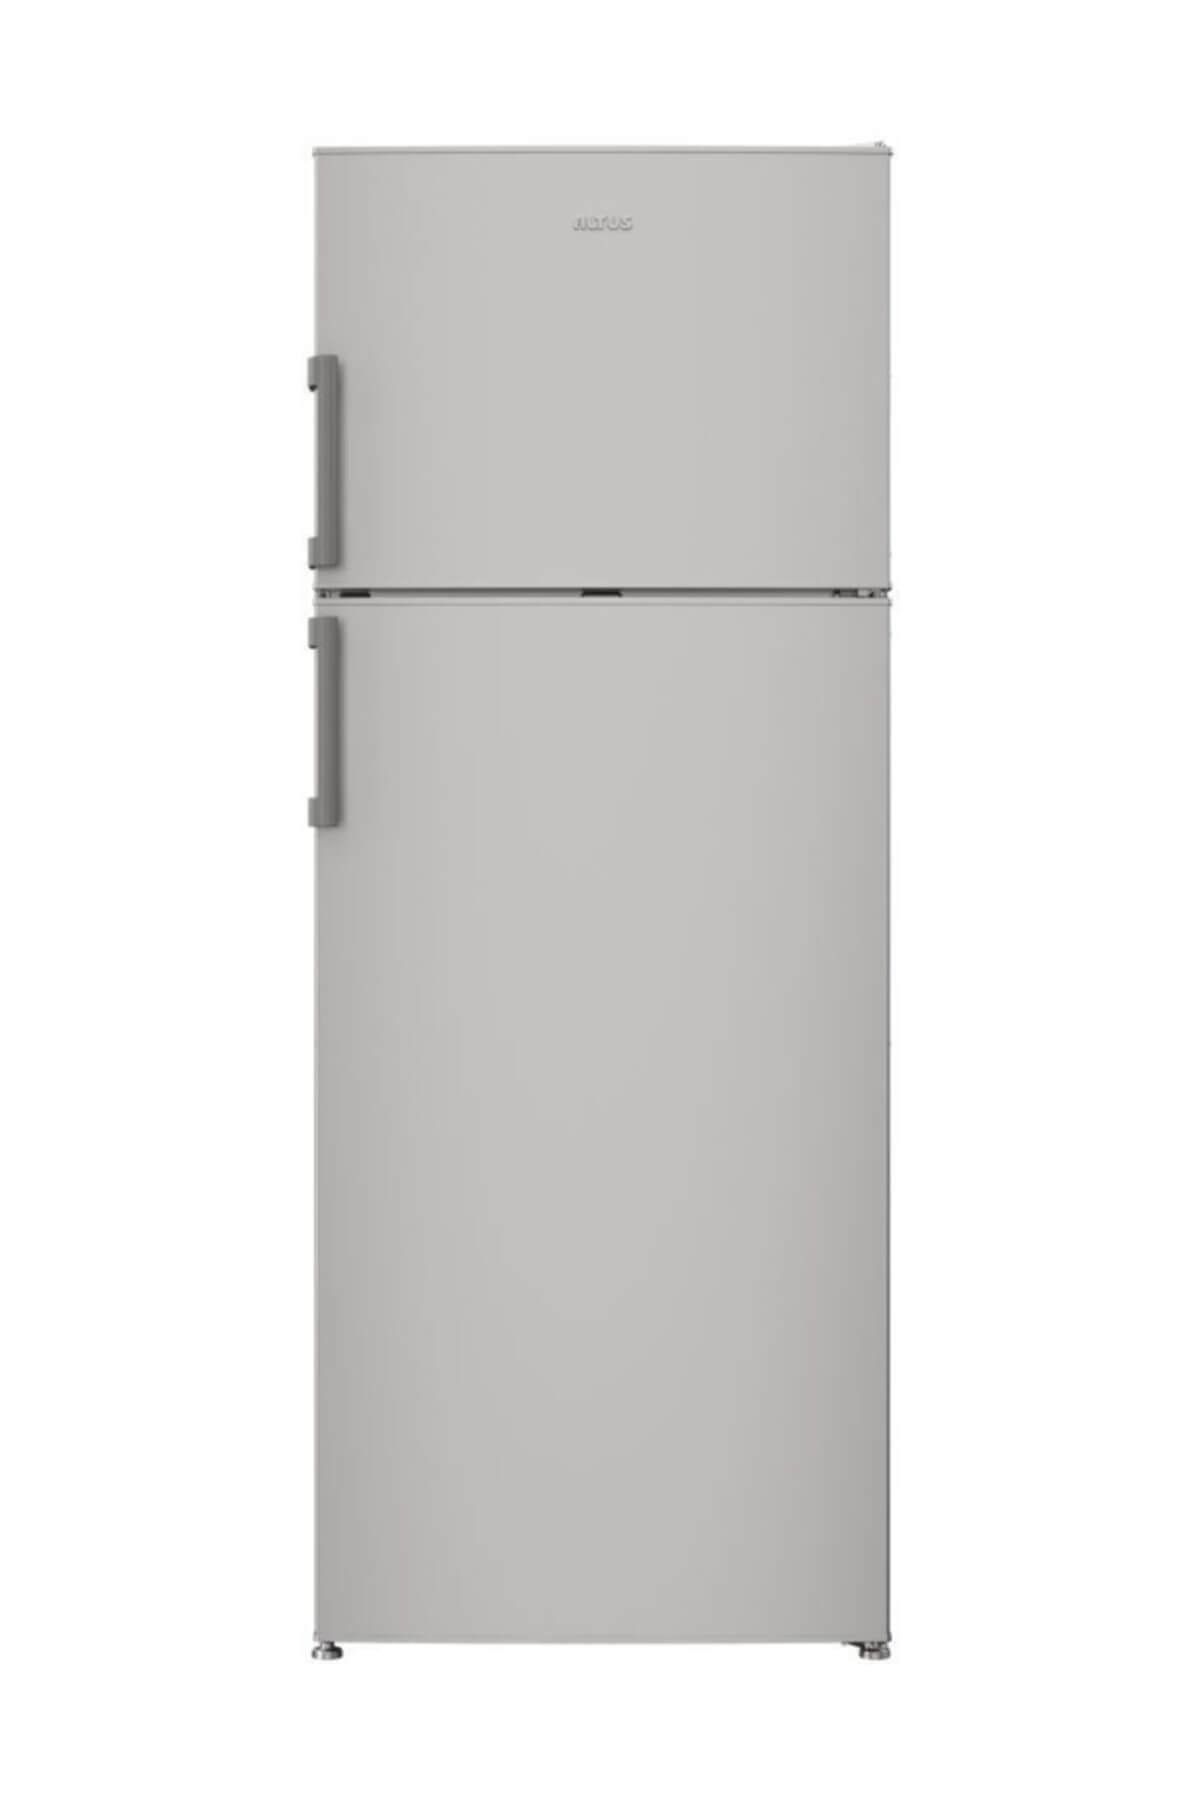 Altus AL 355 TS A+ Çift Kapılı Buzdolabı